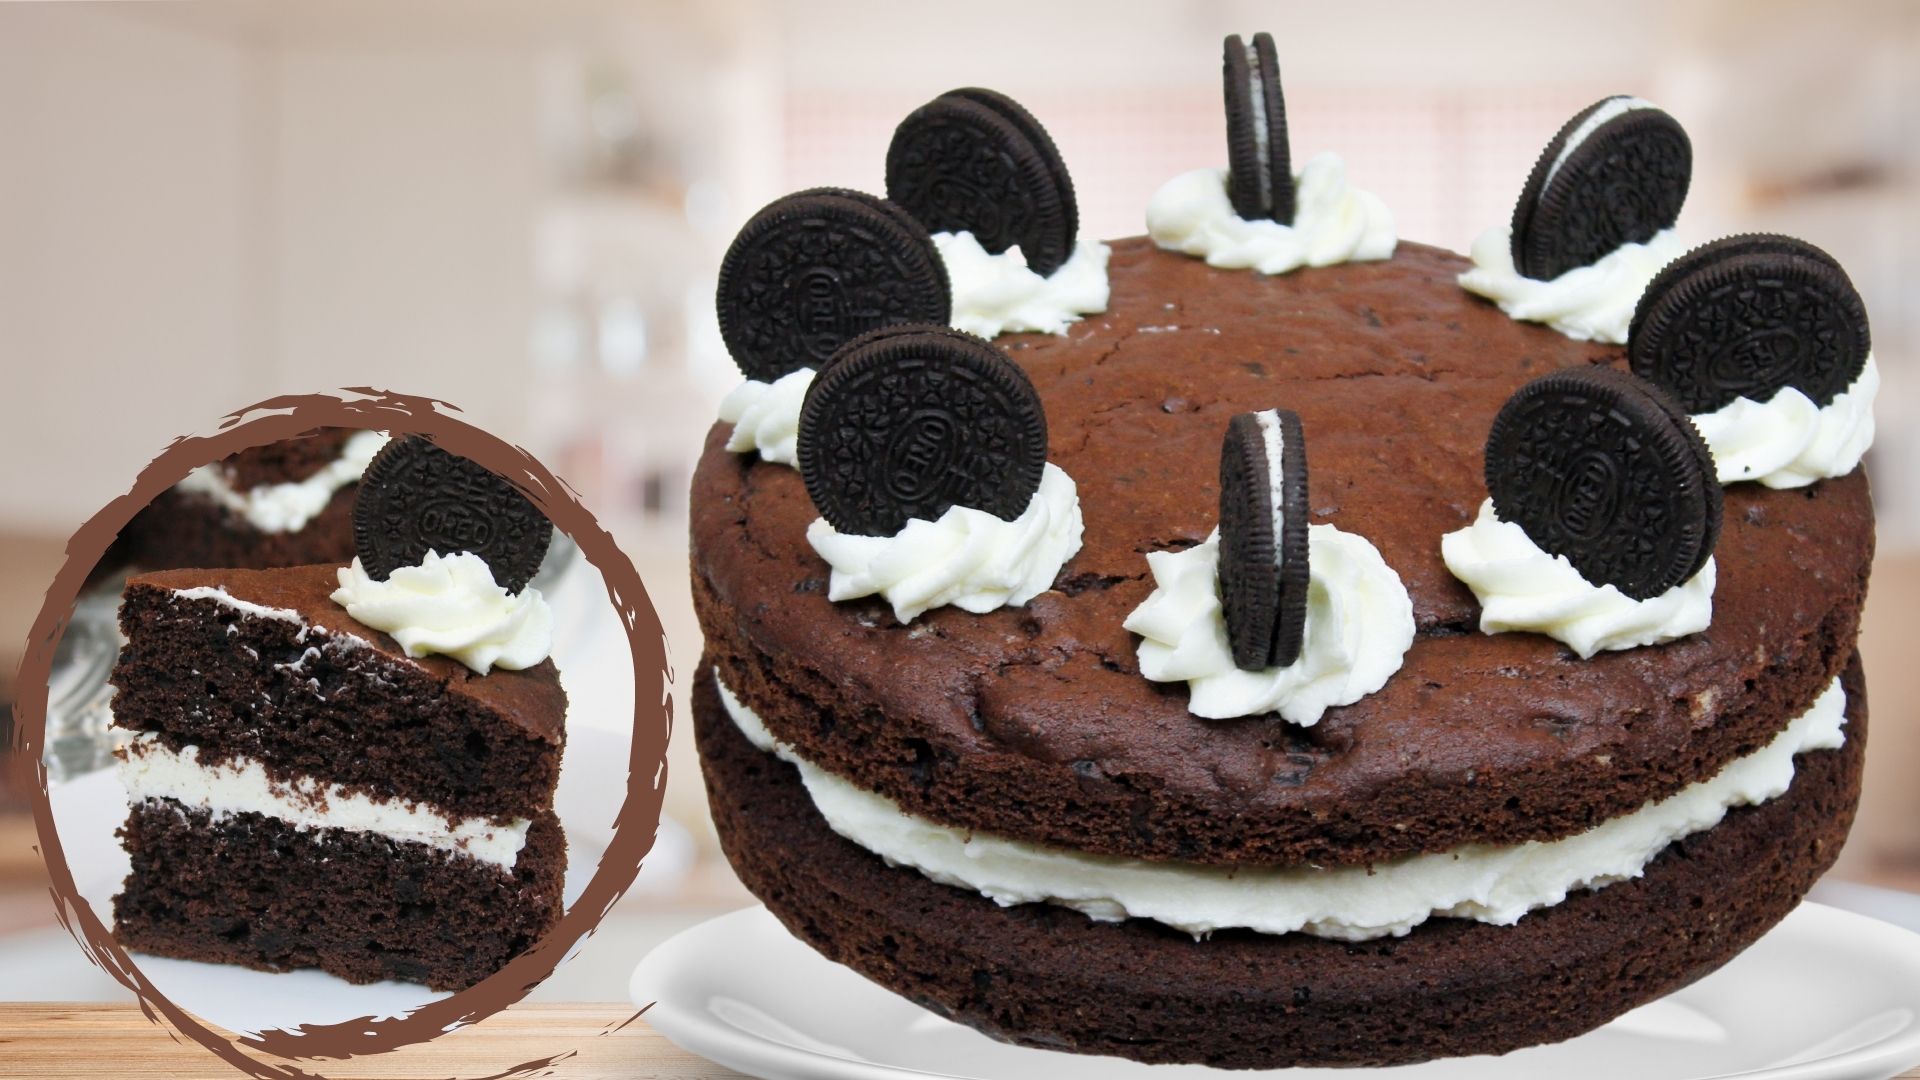 Cookies And Cream Cake Dunkler Schokoladenkuchen Mit Vanillefllung Amerikanisch Kochende